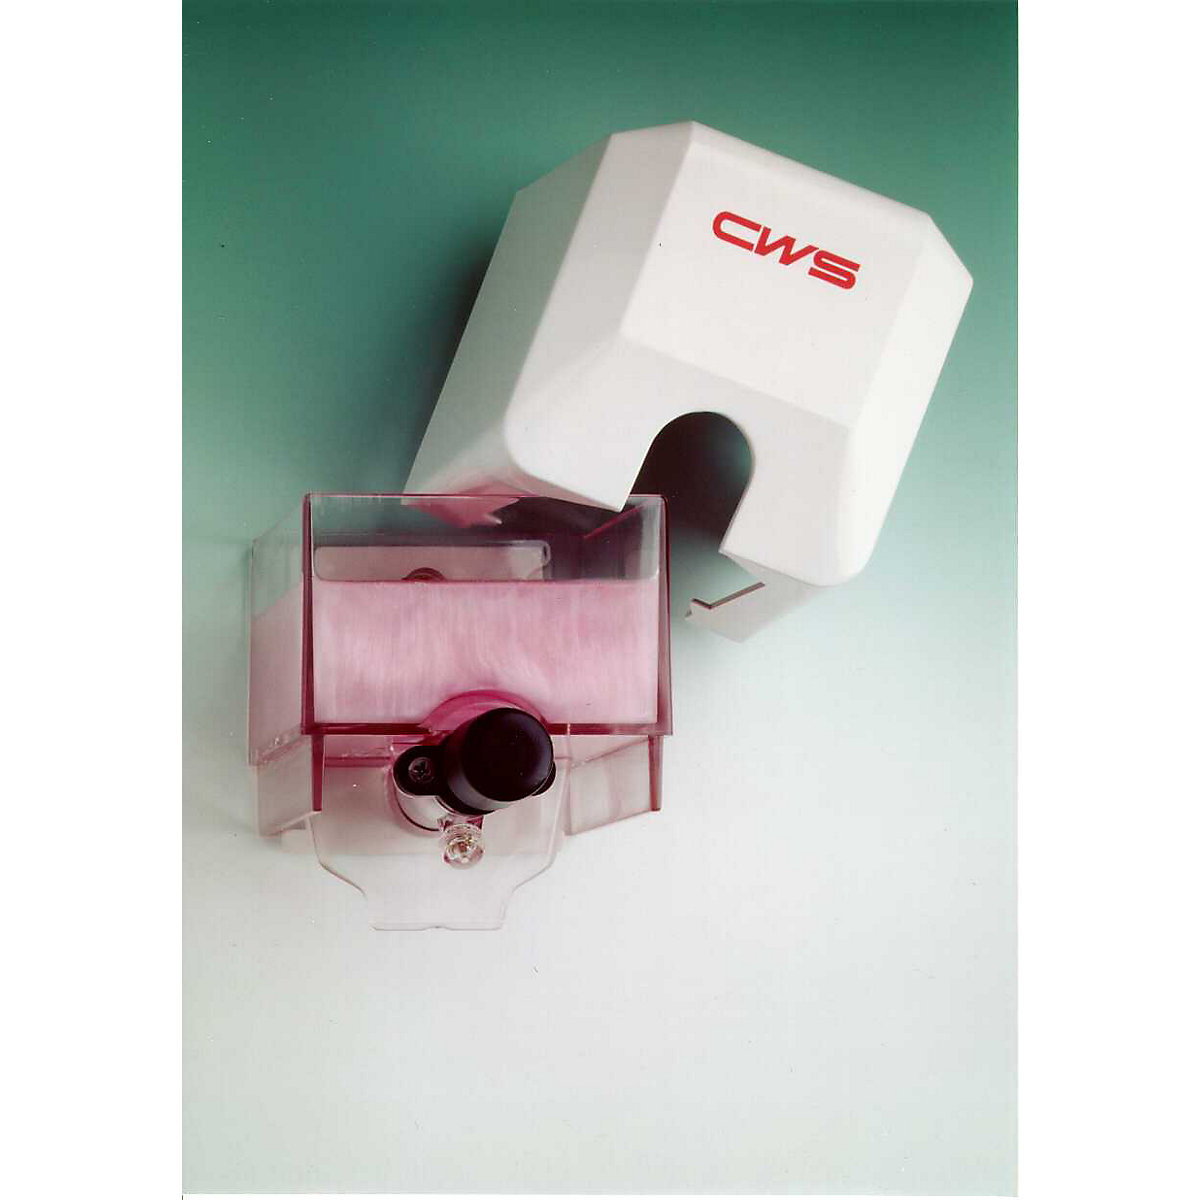 Shower gel and soap dispenser - CWS